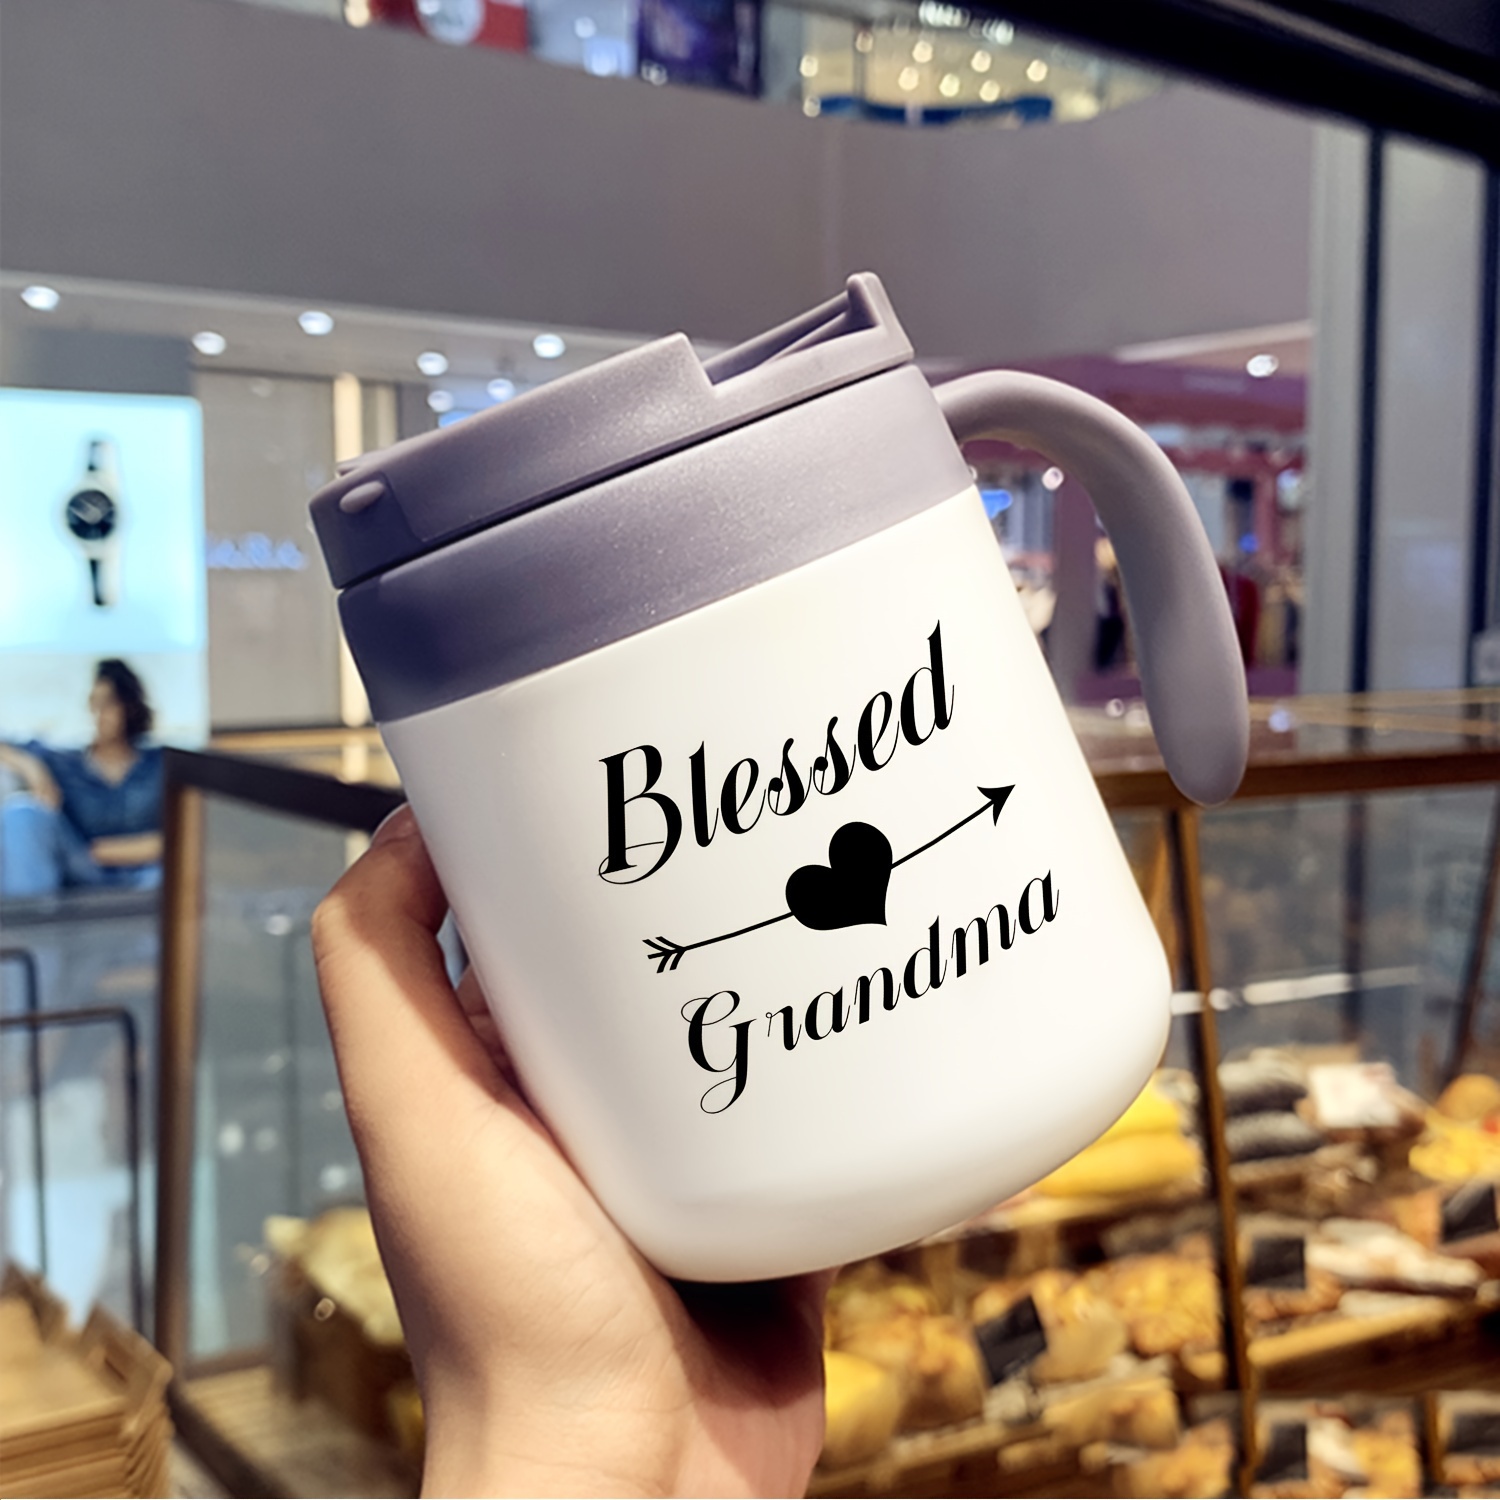 Best Grandma Ever Coffee Mug, Insulated Travel Tea Mug With Handle And Lid,  Grandma Mug For Birthday Christmas Mothers Gifts Day, Gifts For Grandma And  Women - Temu